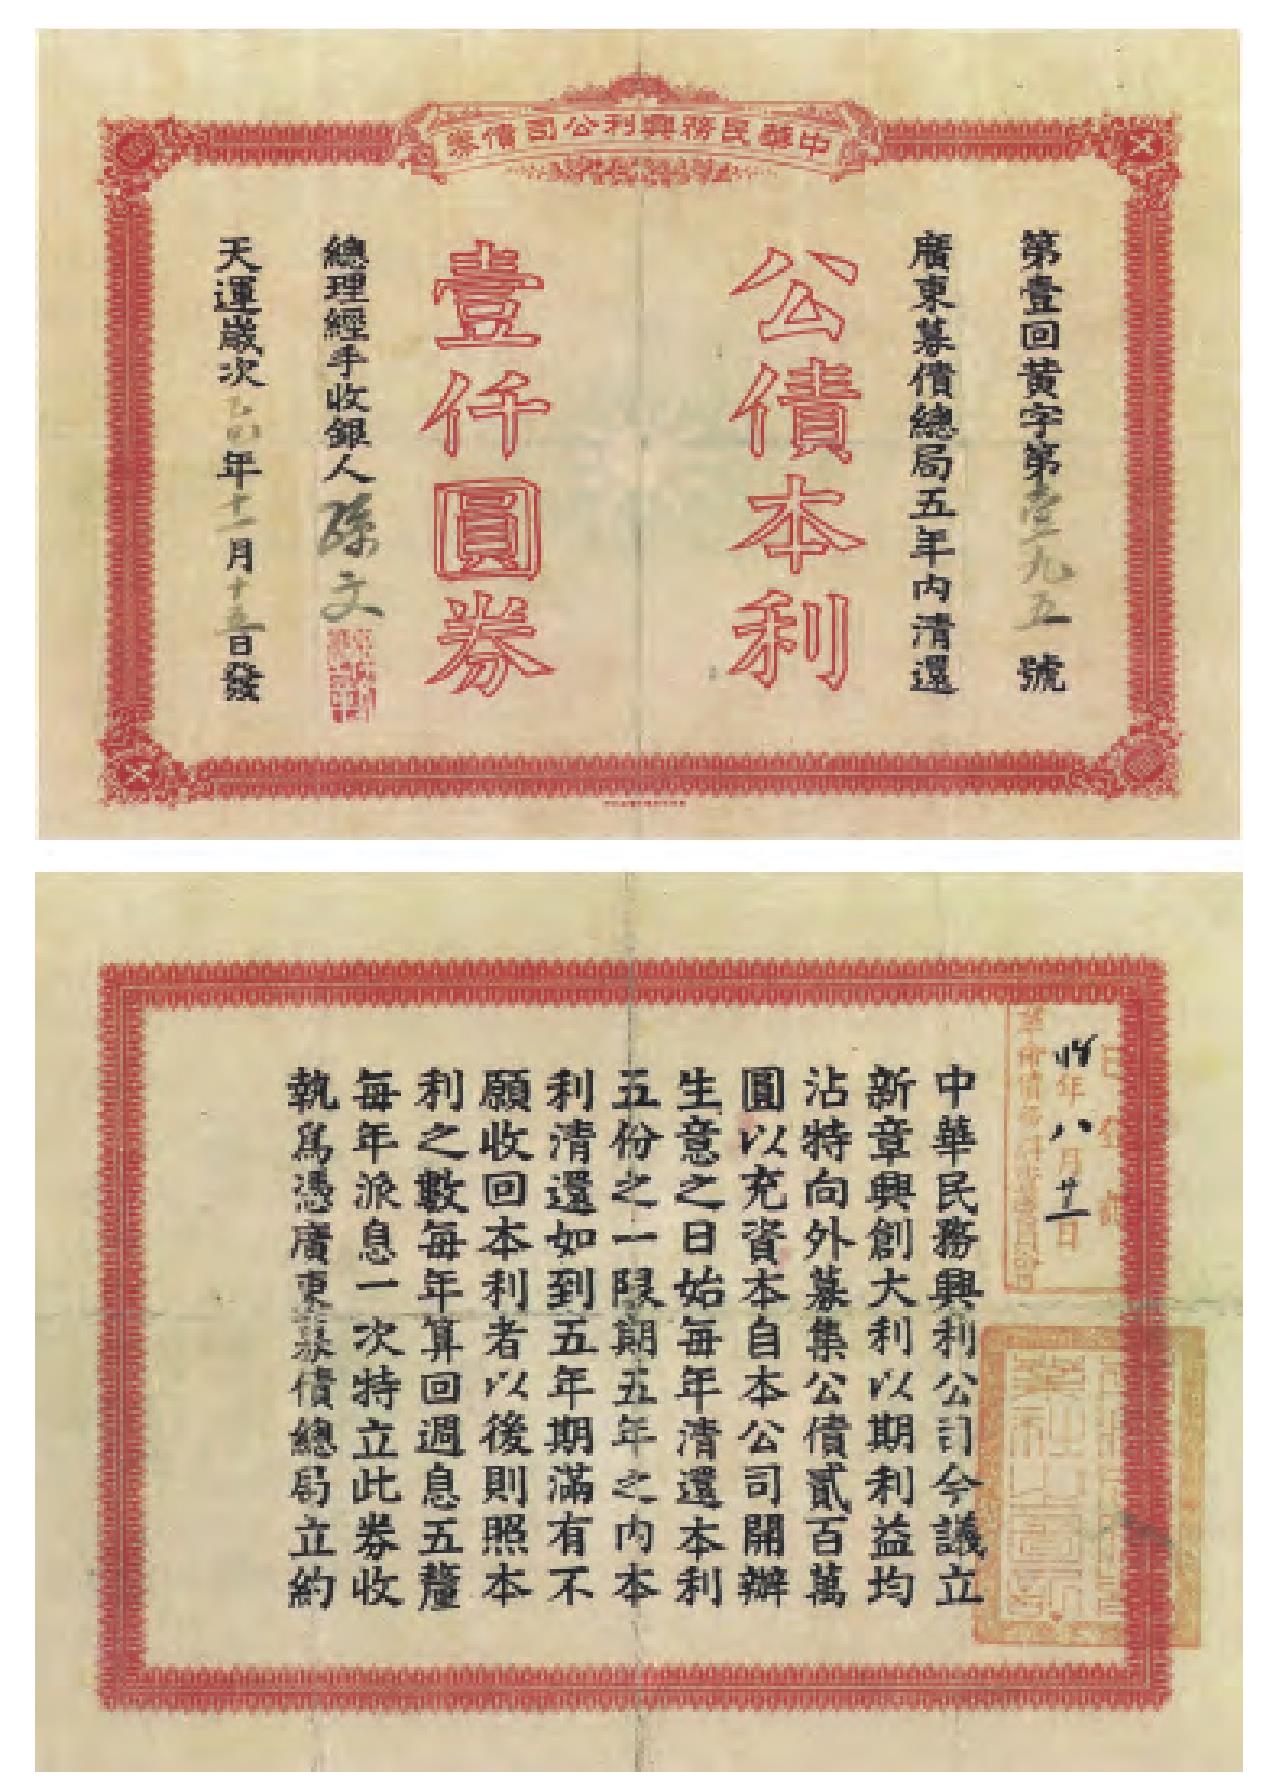 中華民務興利公司債券乙巳年(1905)壹仟圓券